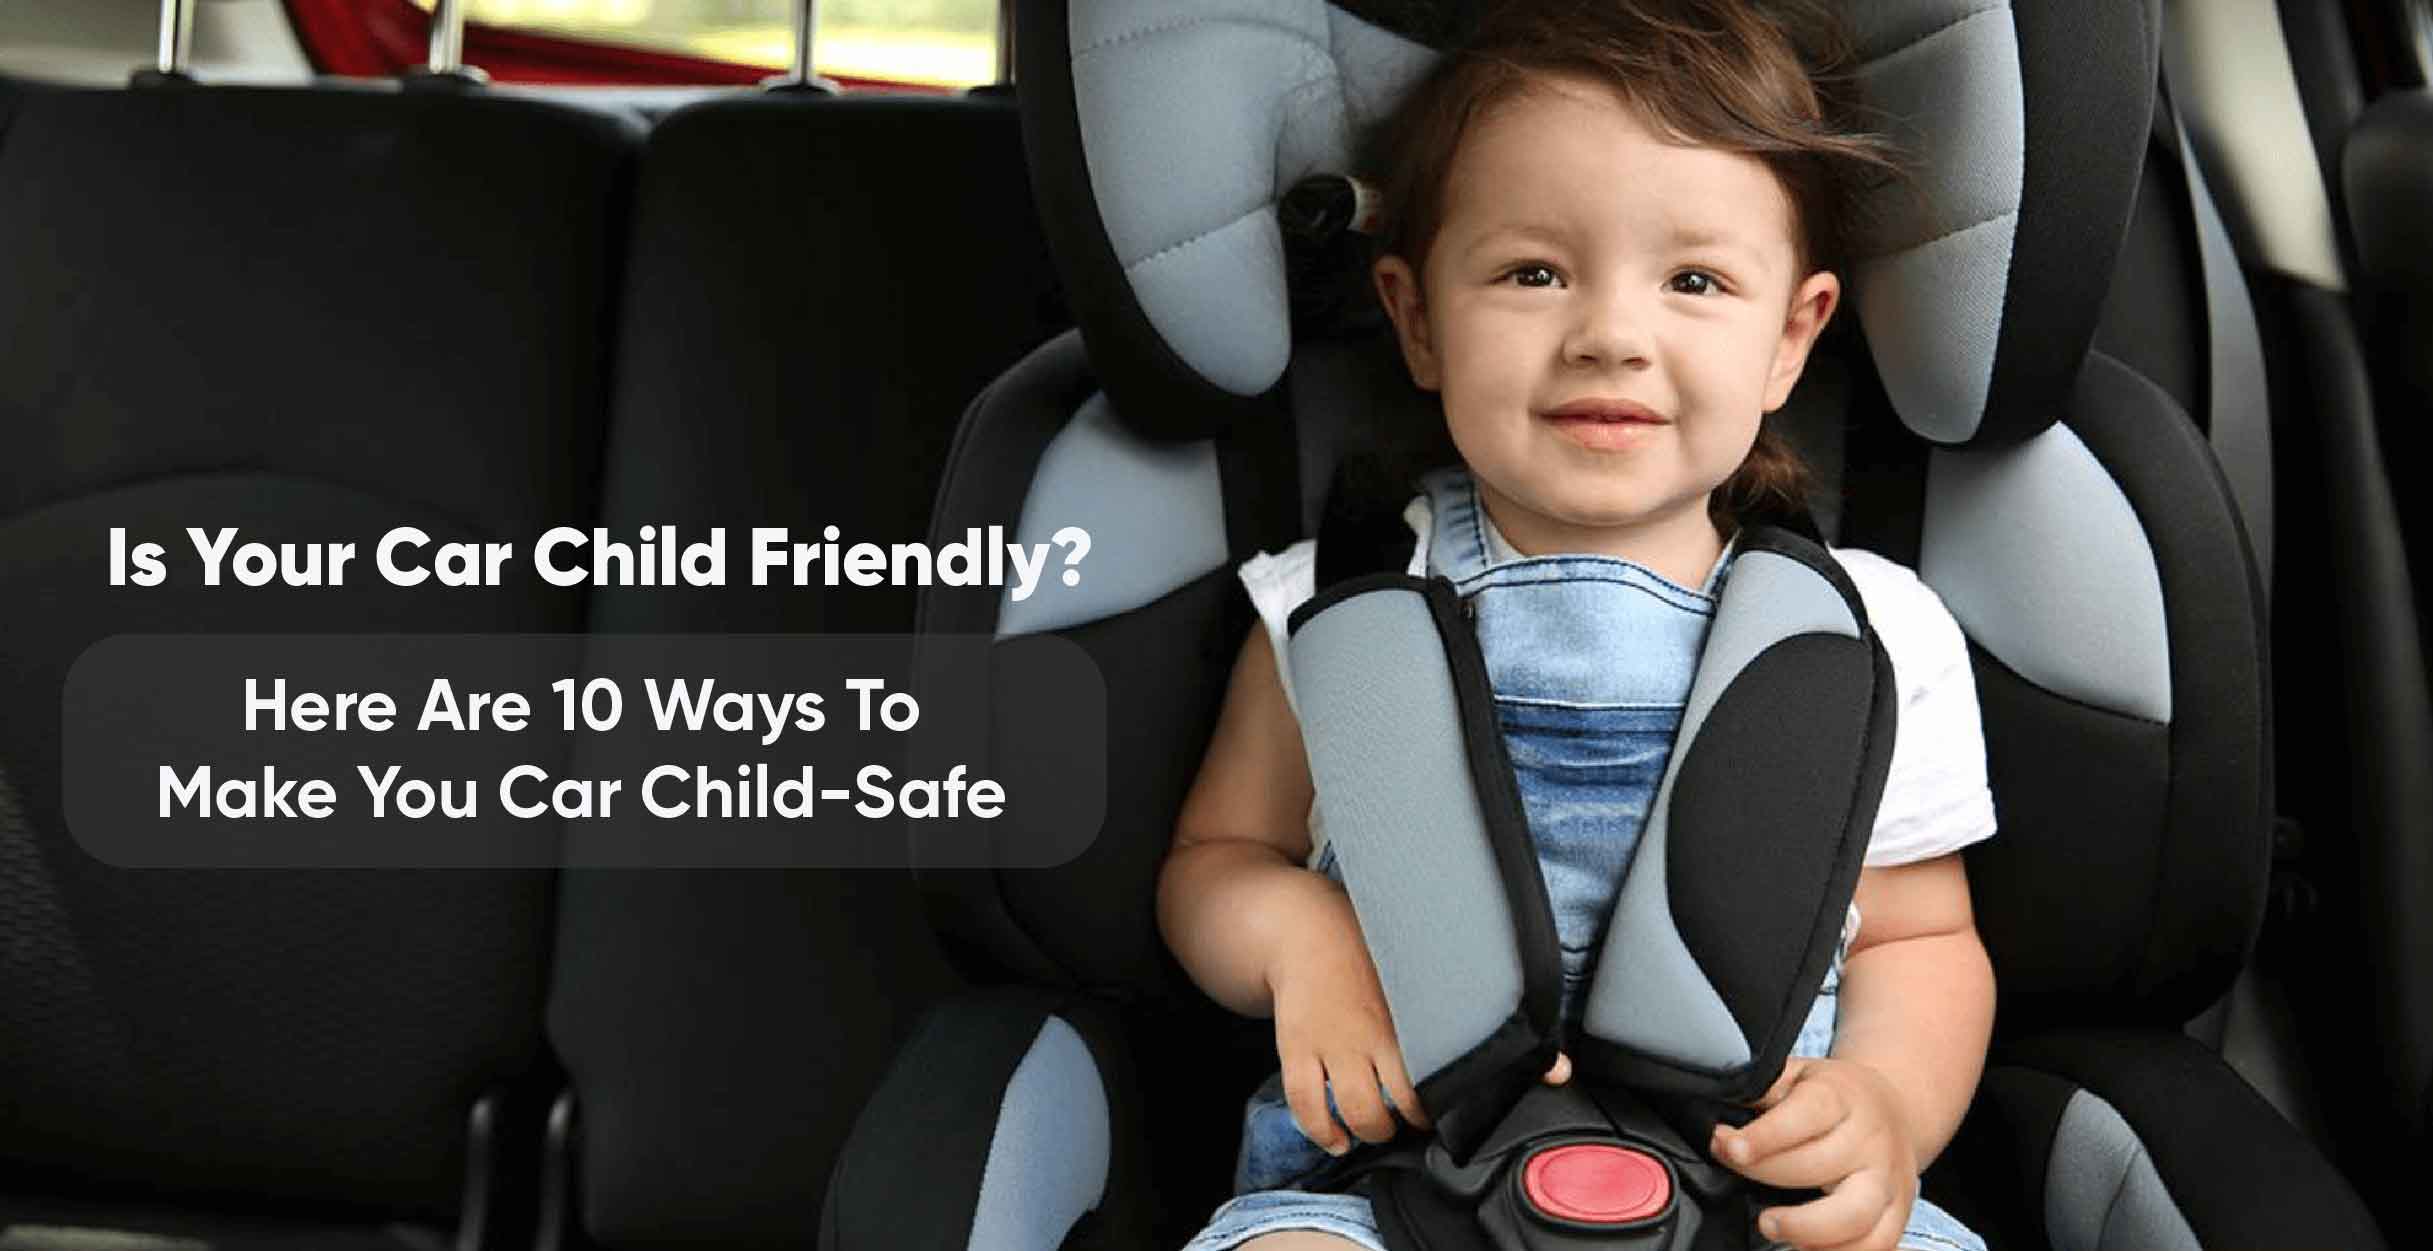 13 Child Safety Products ideas  child safety, children, kids safe